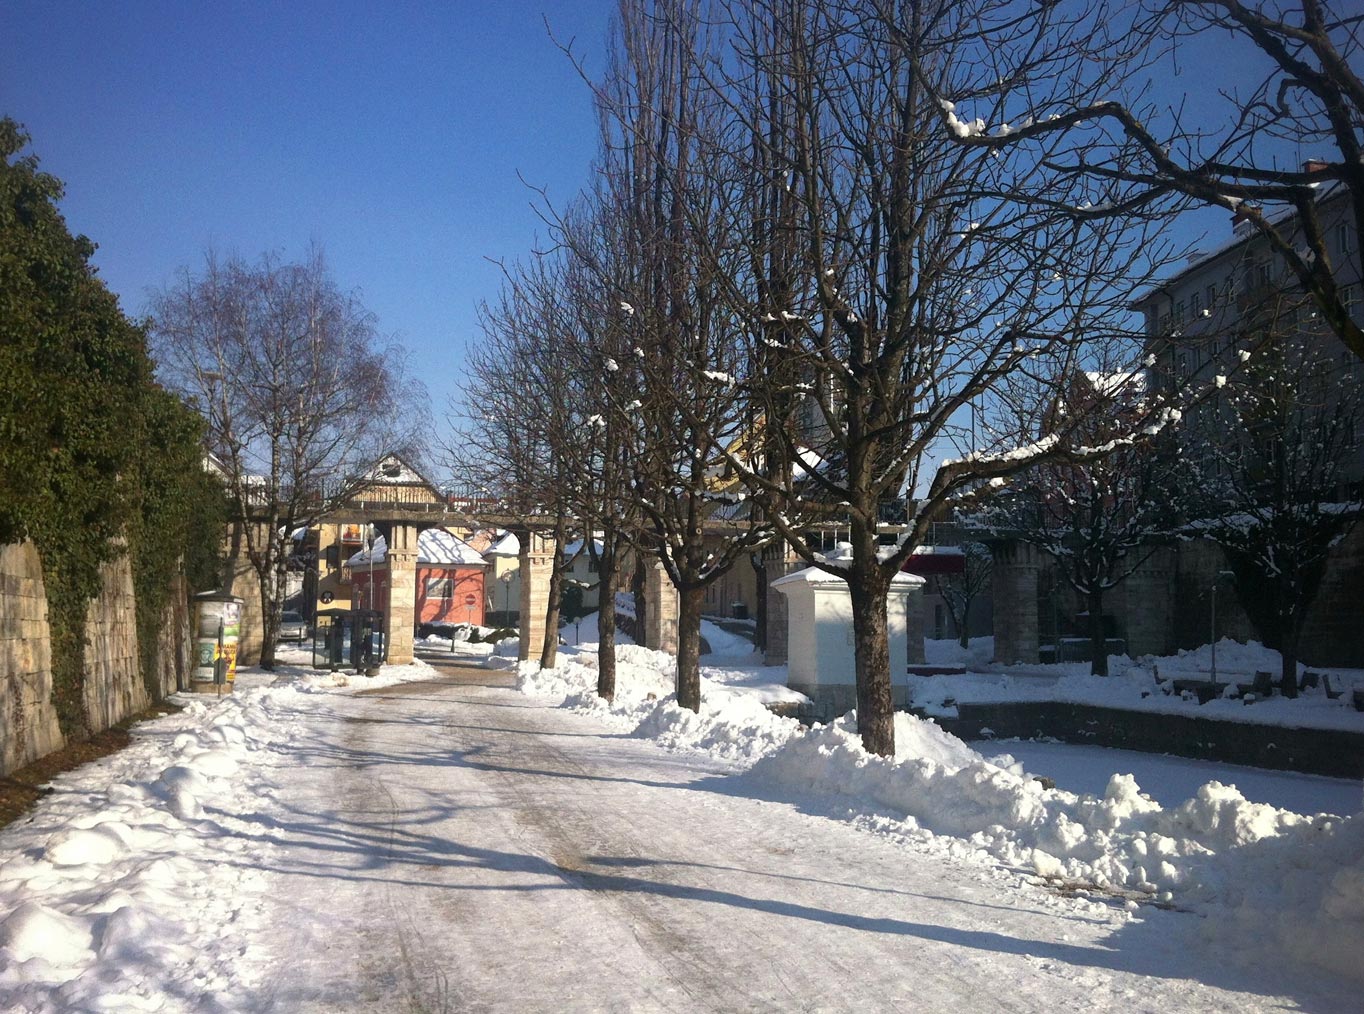 Auch im in der kalten Jahreszeit ist an der Ljubljanica was los während der Lendhafen friedlich Winterschlaf hält. Fotos: ilab crossmedia